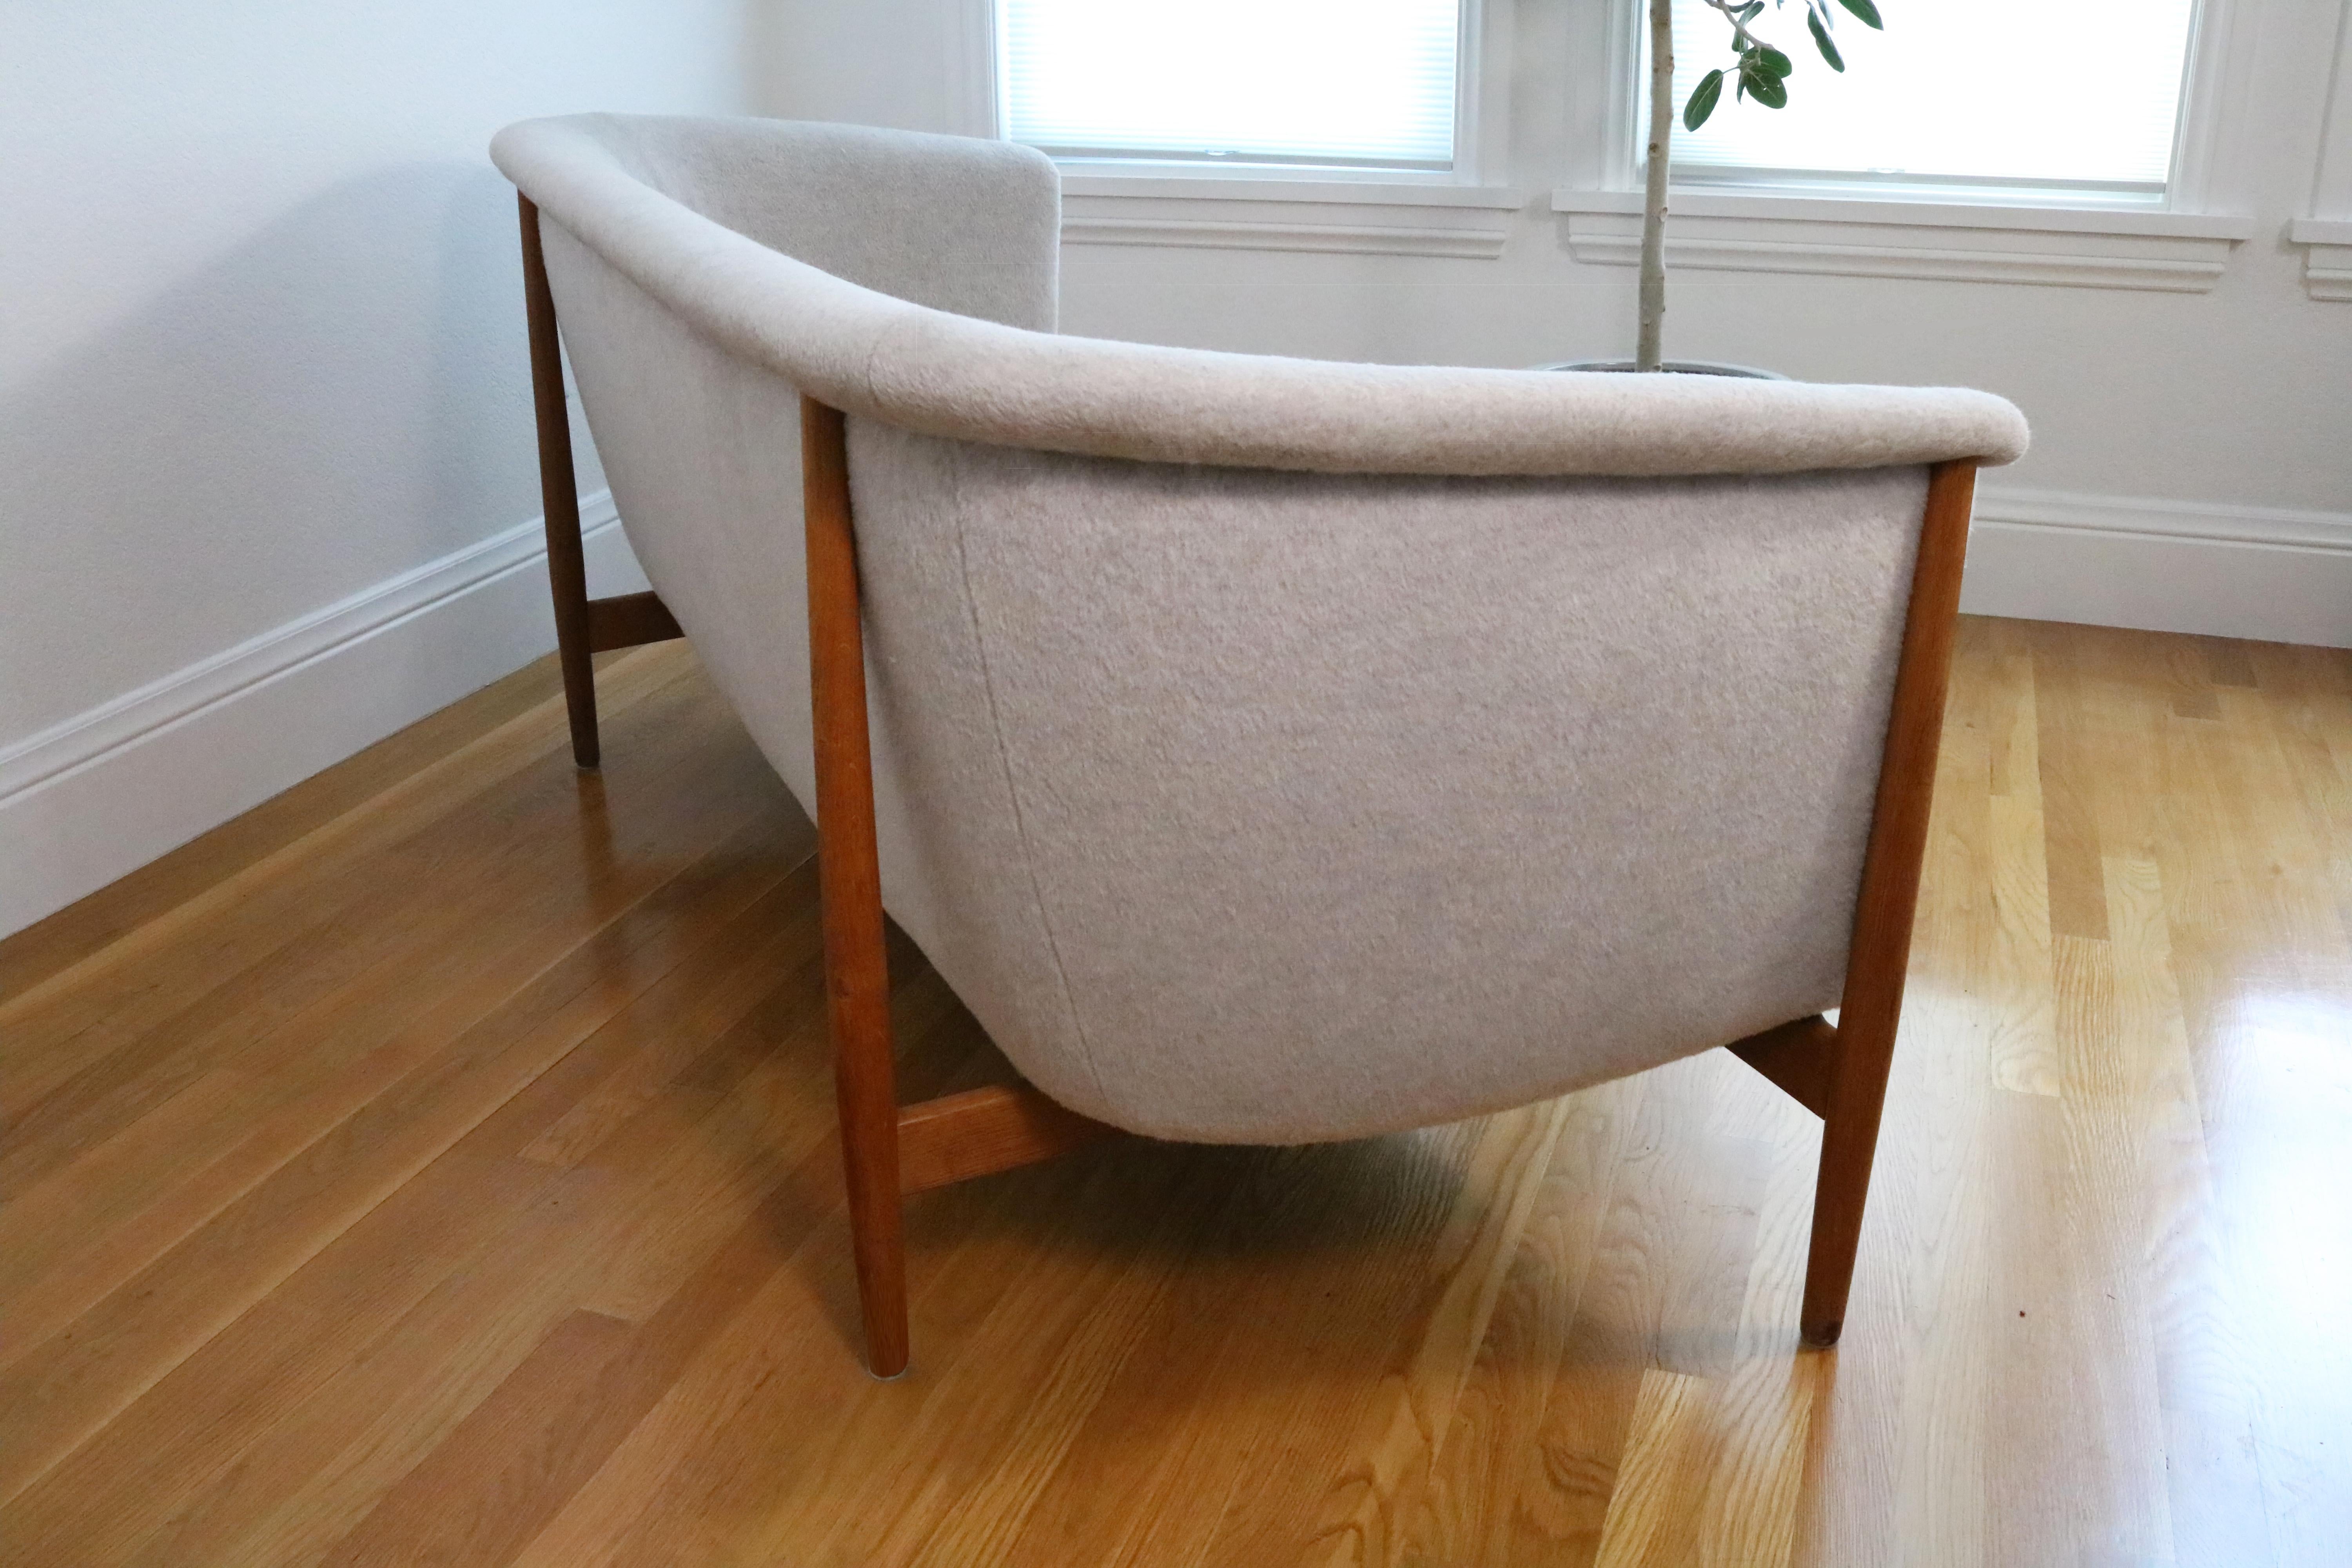 Ein seltenes und kultiges Sofa von Nanna Ditzel für Søren Willadsen, entworfen und hergestellt in den 1950er Jahren.

Kürzlich neu gepolstert mit luxuriöser, weicher, hellgrauer Premium-Wollpolsterung. Äußerer Rahmen aus alter Weißeiche.

In